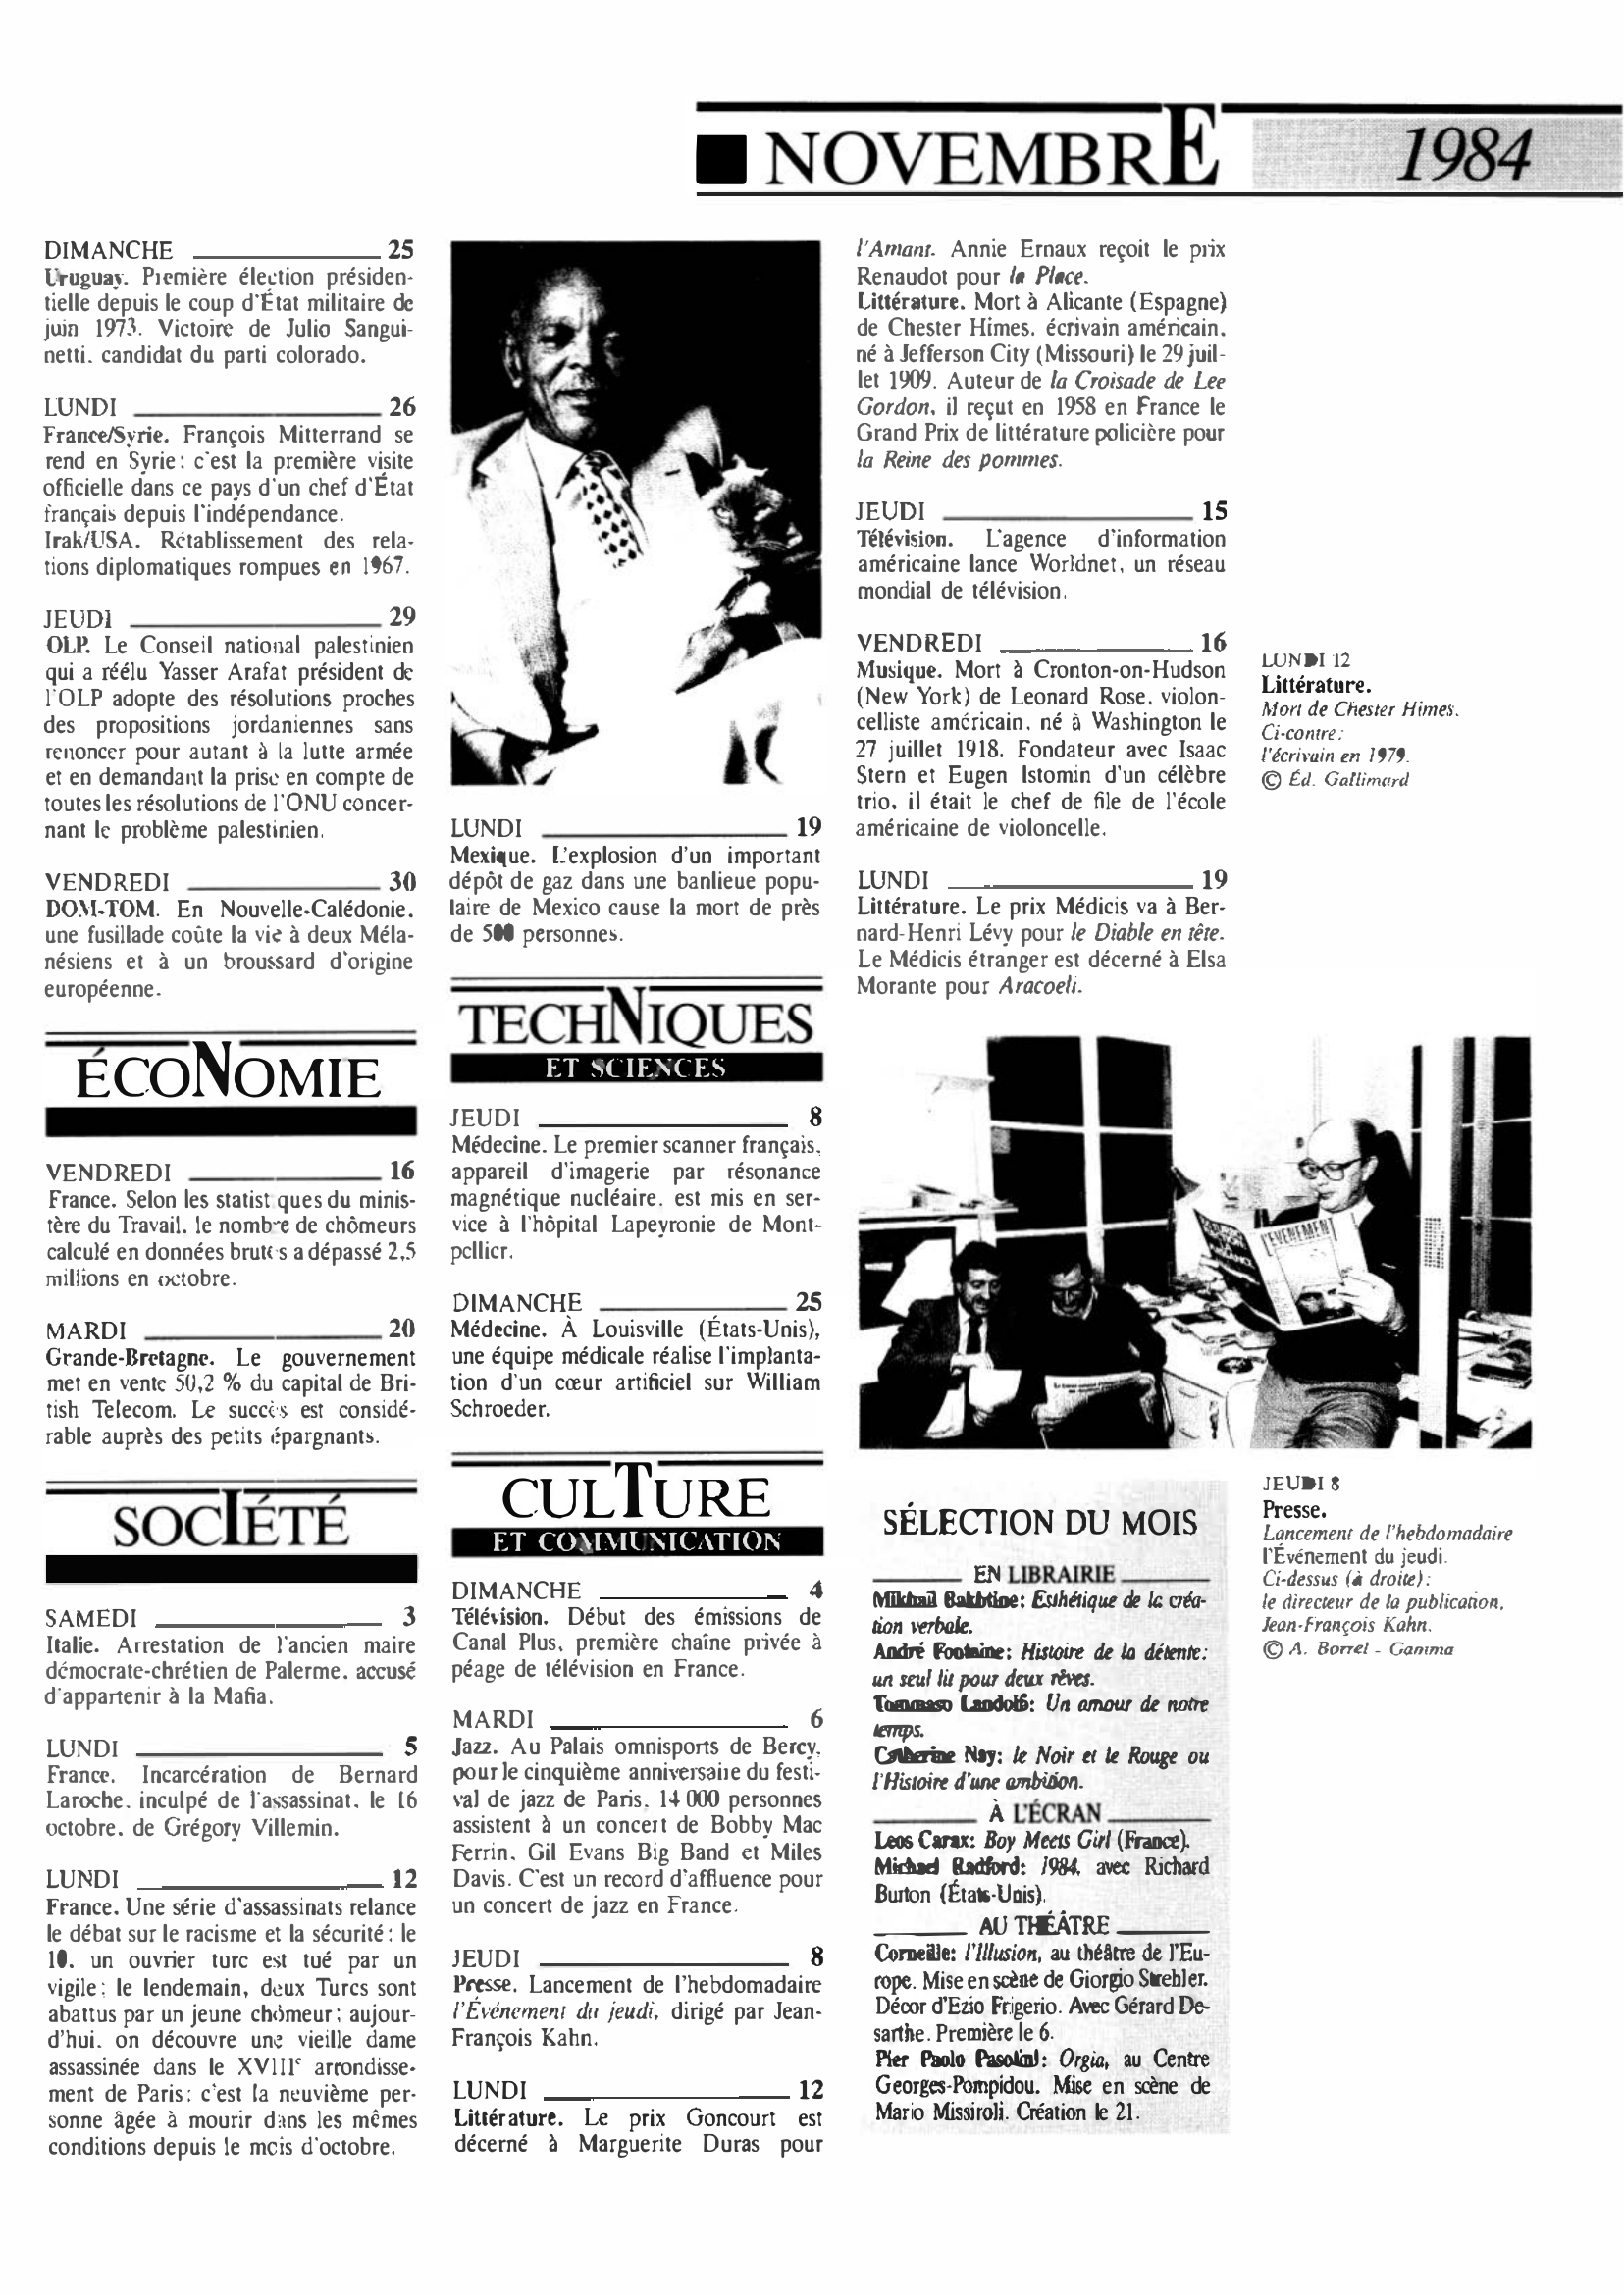 Prévisualisation du document 1984 Novembre dans le monde (histoire chronologique)